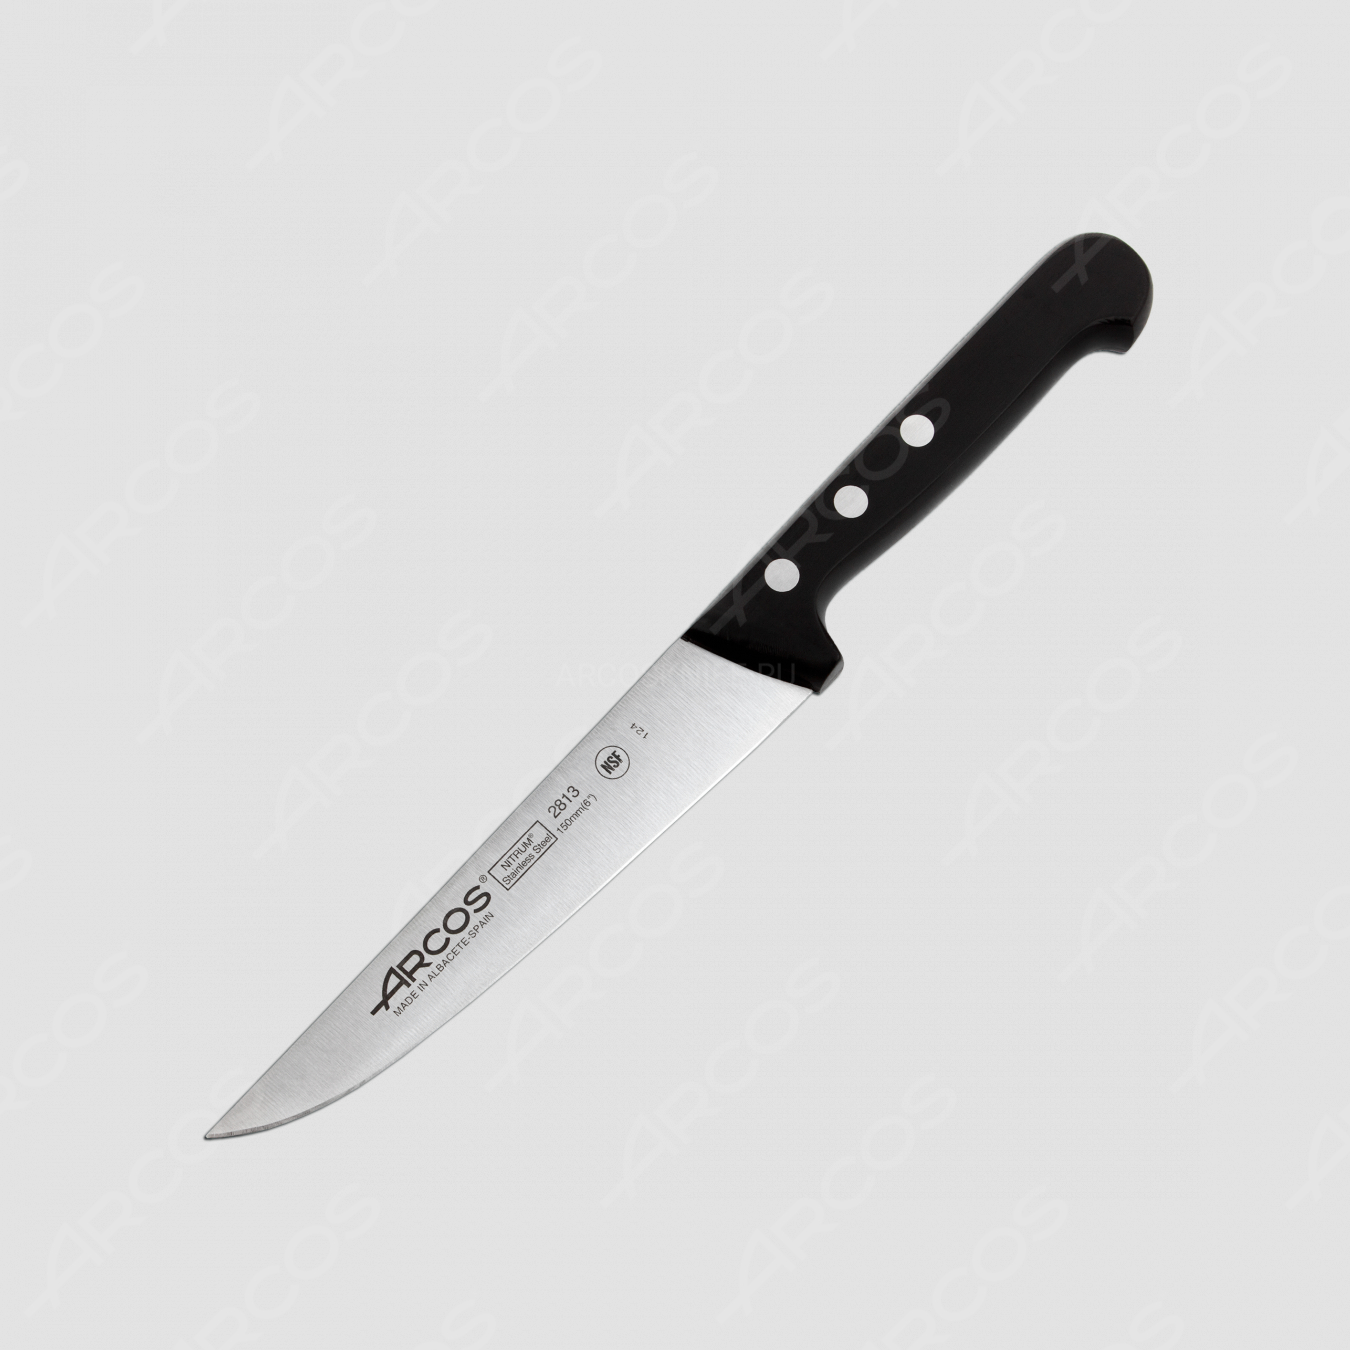 Нож кухонный 15 см, серия Universal, ARCOS, Испания